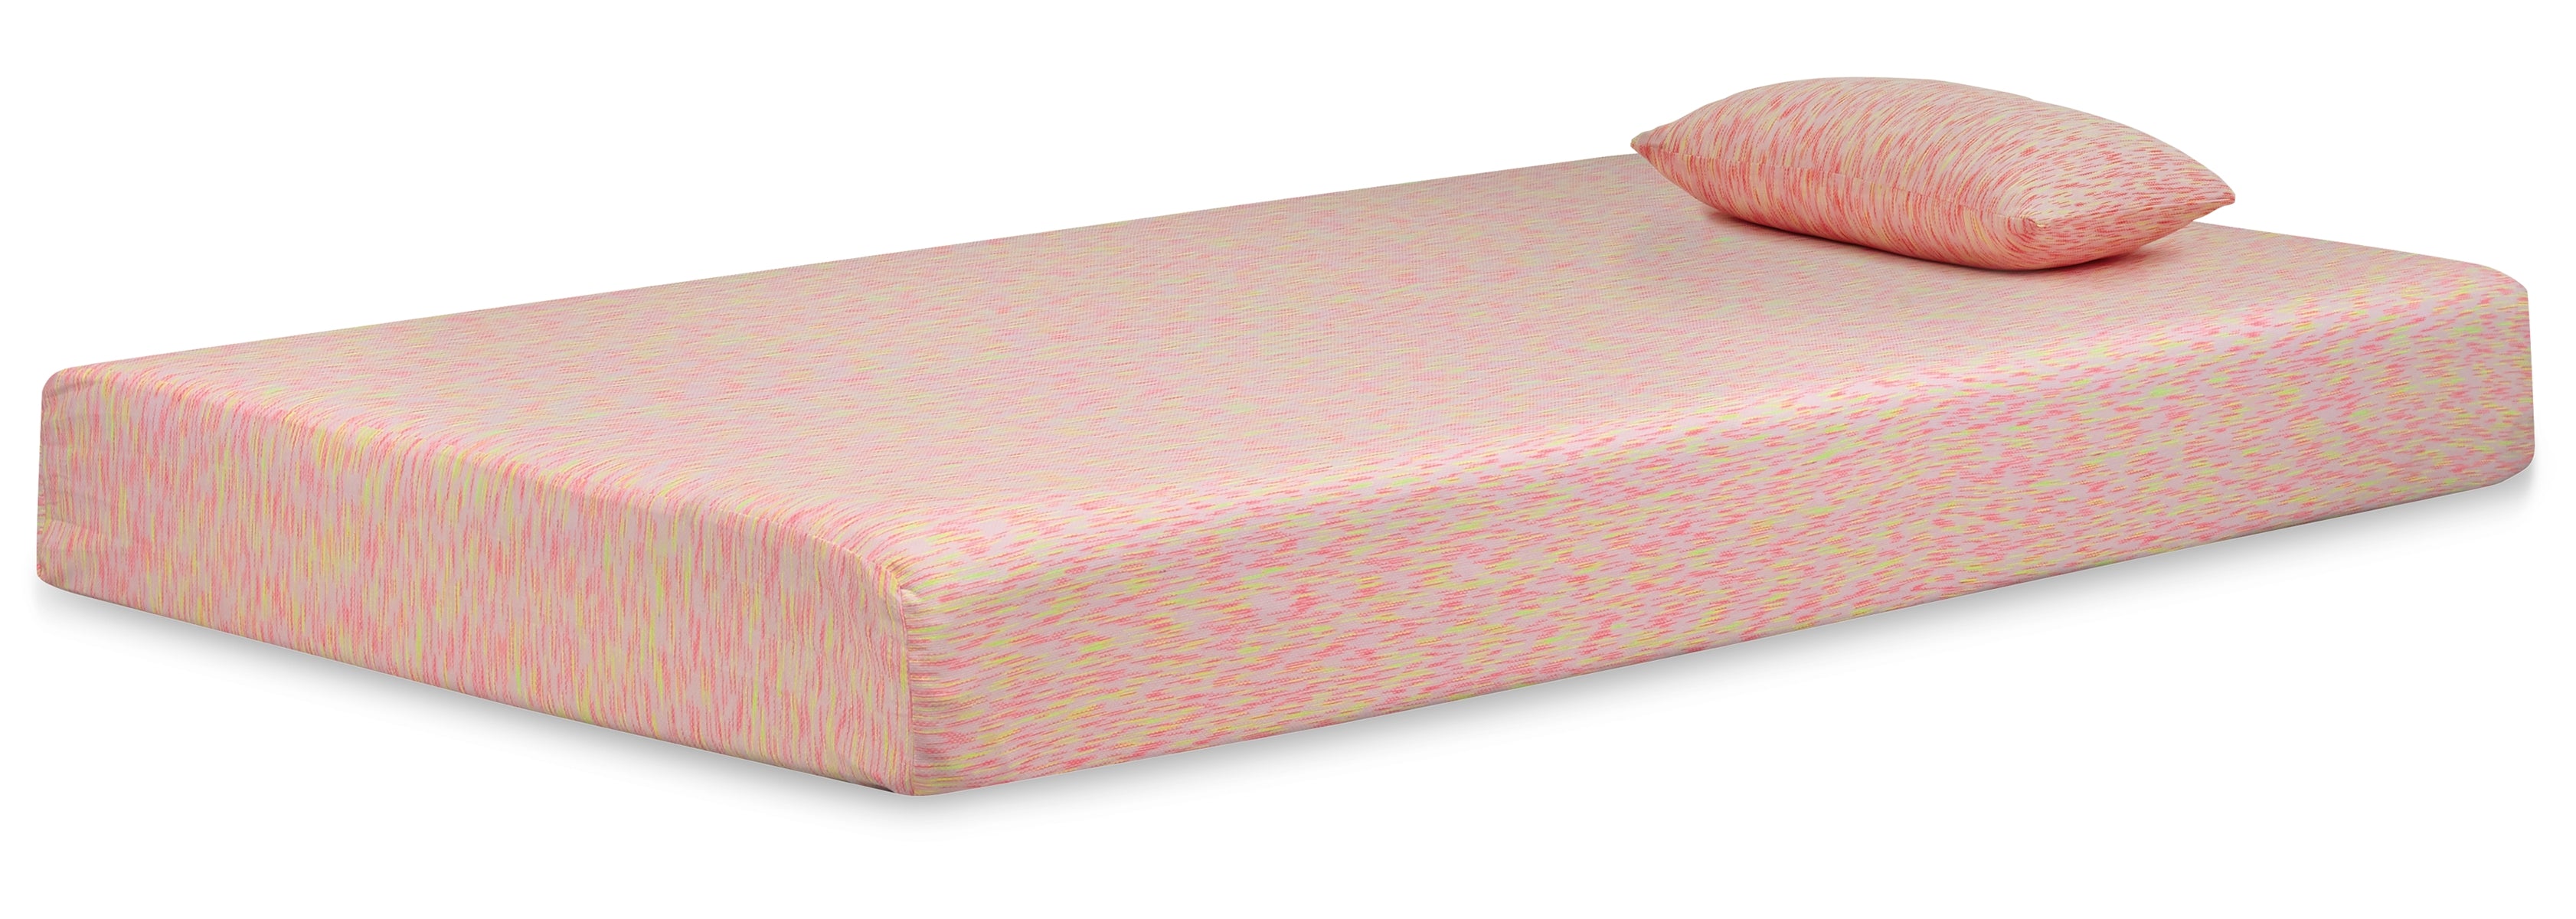 iKidz Pink Twin Mattress and Pillow